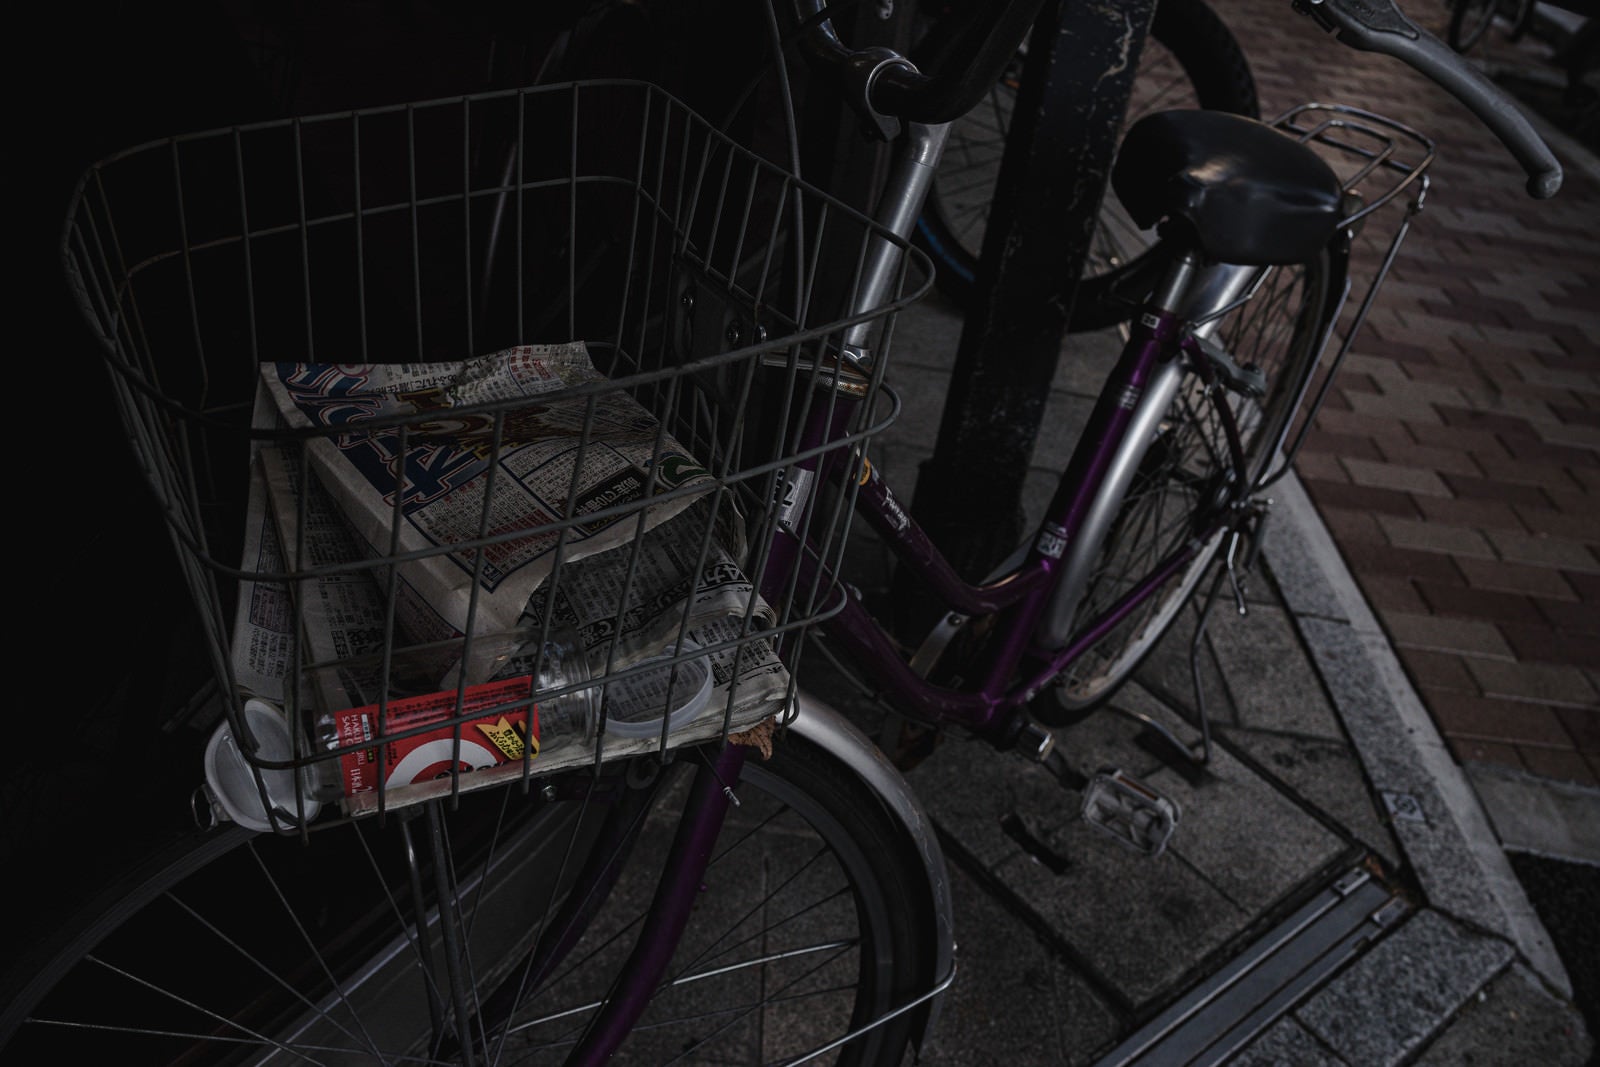 「ワイヤーバスケットにゴミが残る放置自転車」の写真